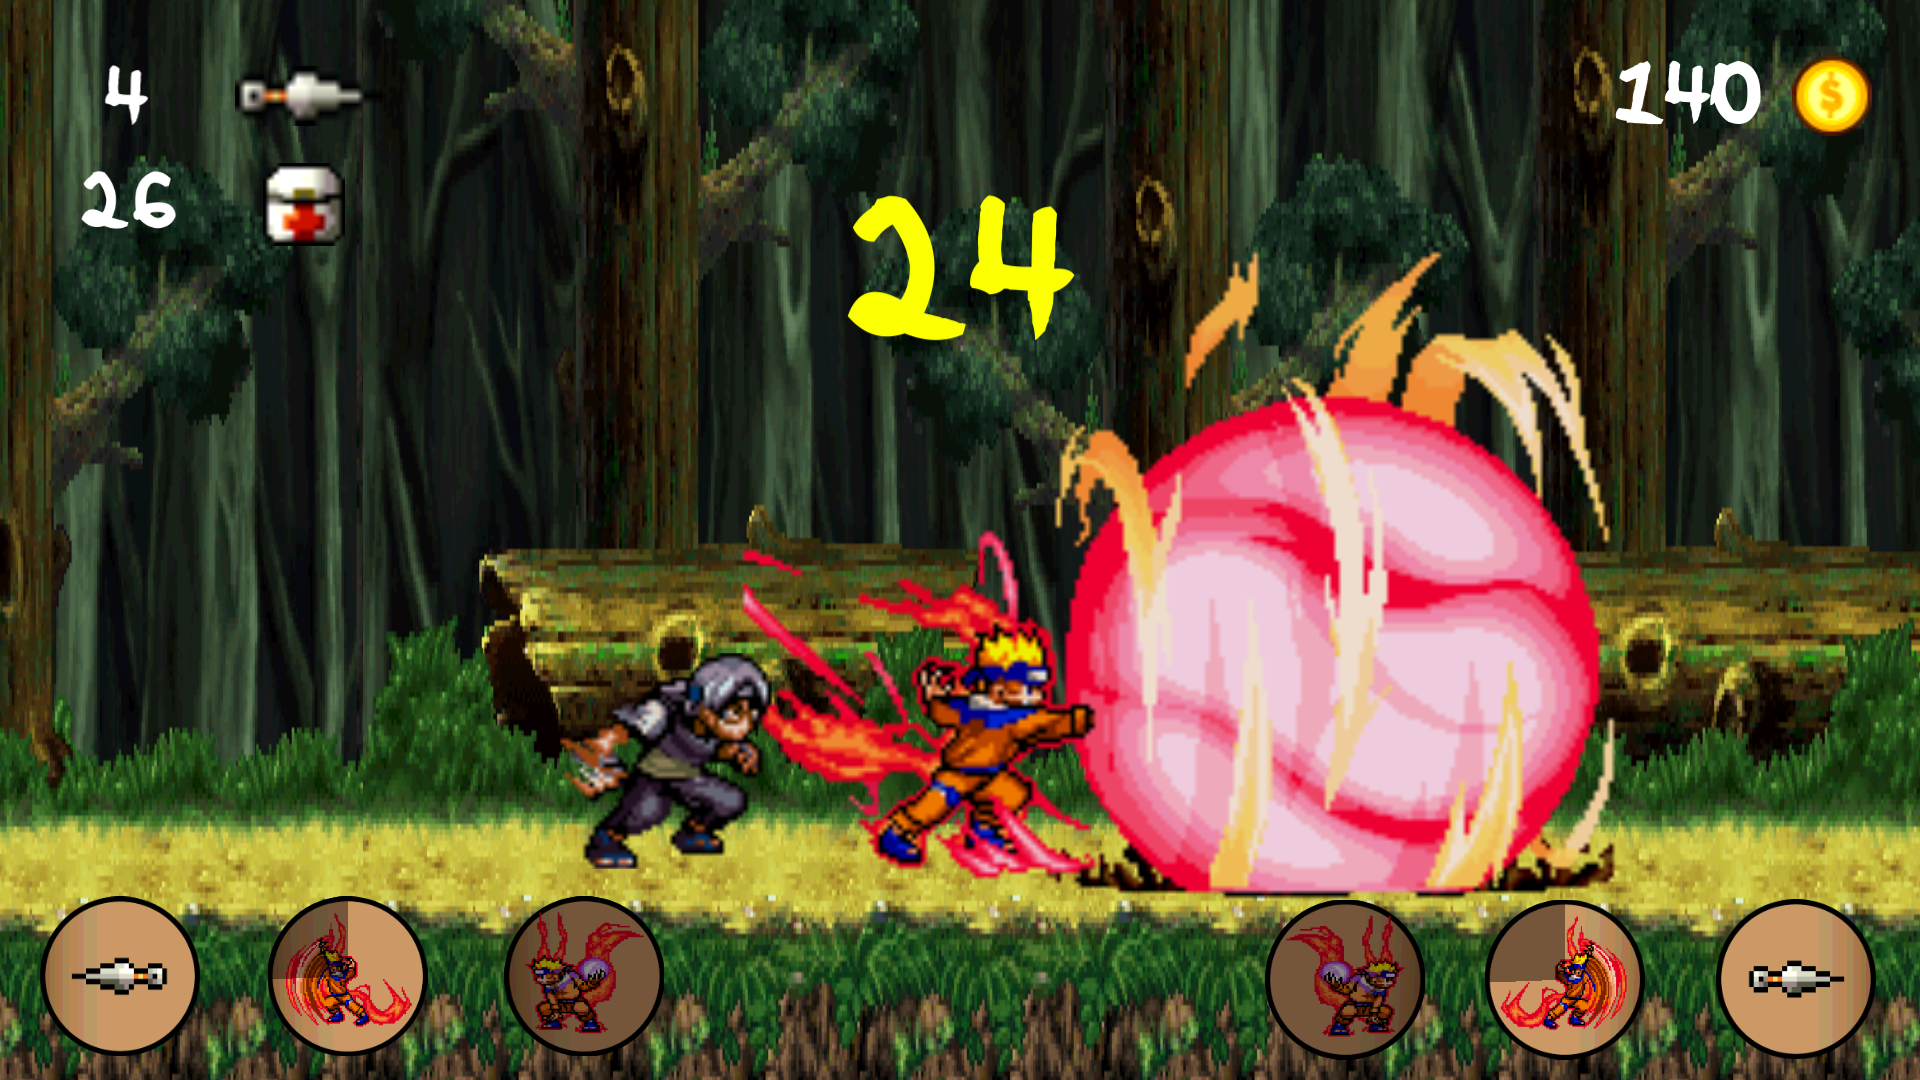 Screenshot 1 of Batalha Ninja Extrema 1.1